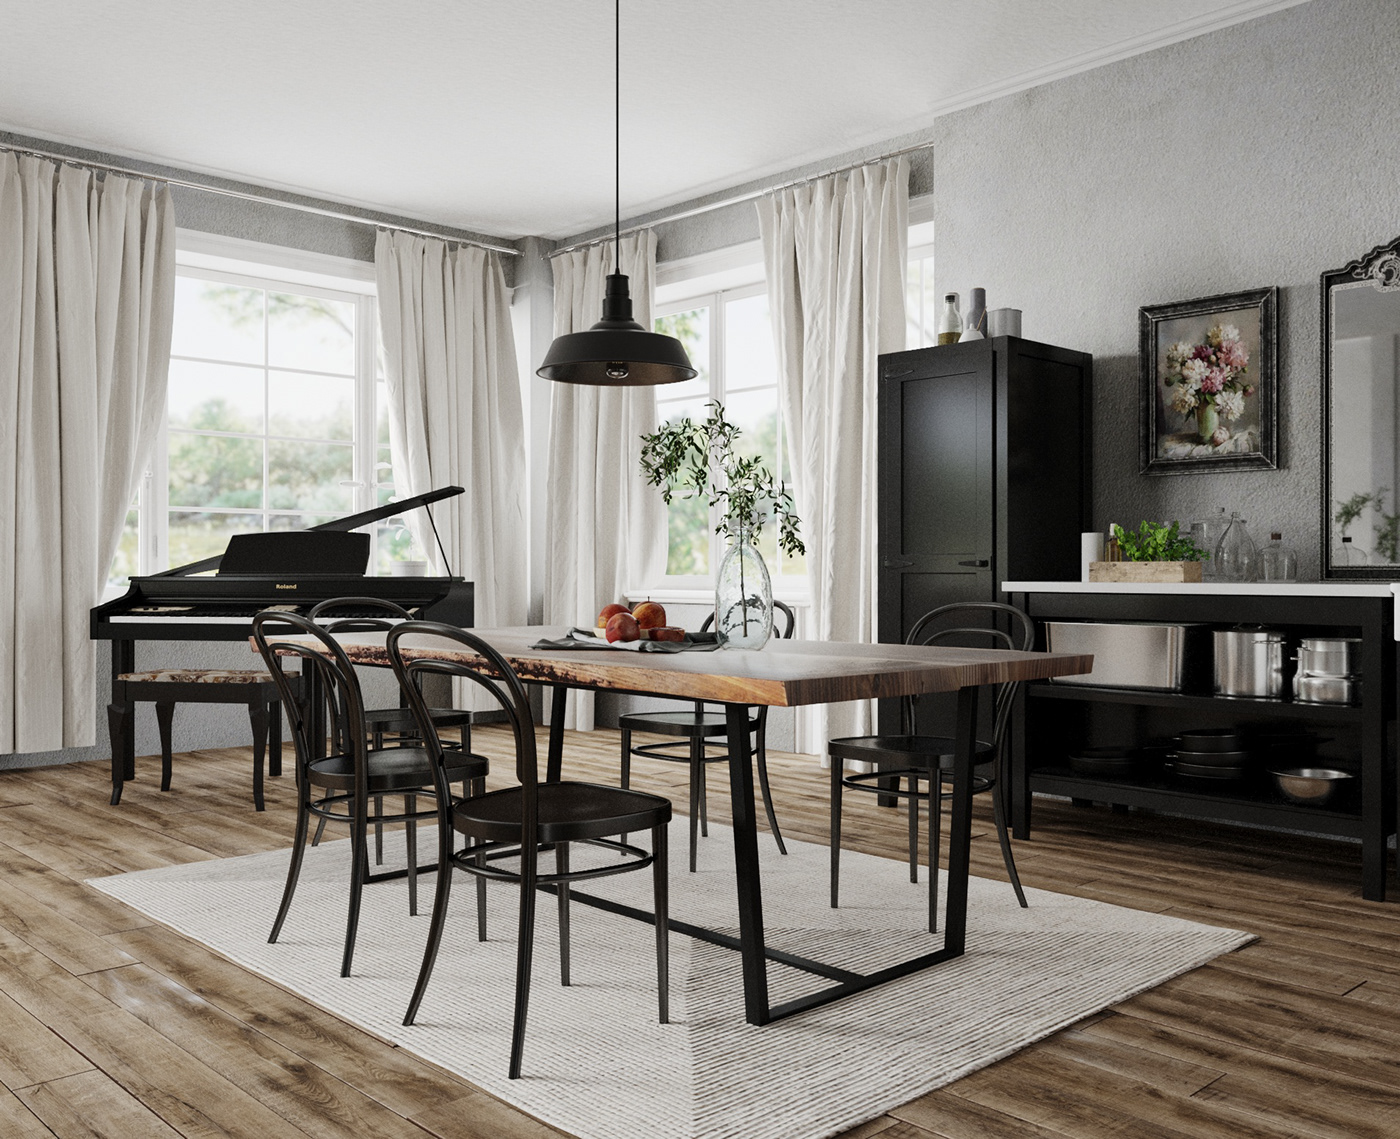 3D 3ds max architecture corona home house Interior interior design  Render visualization